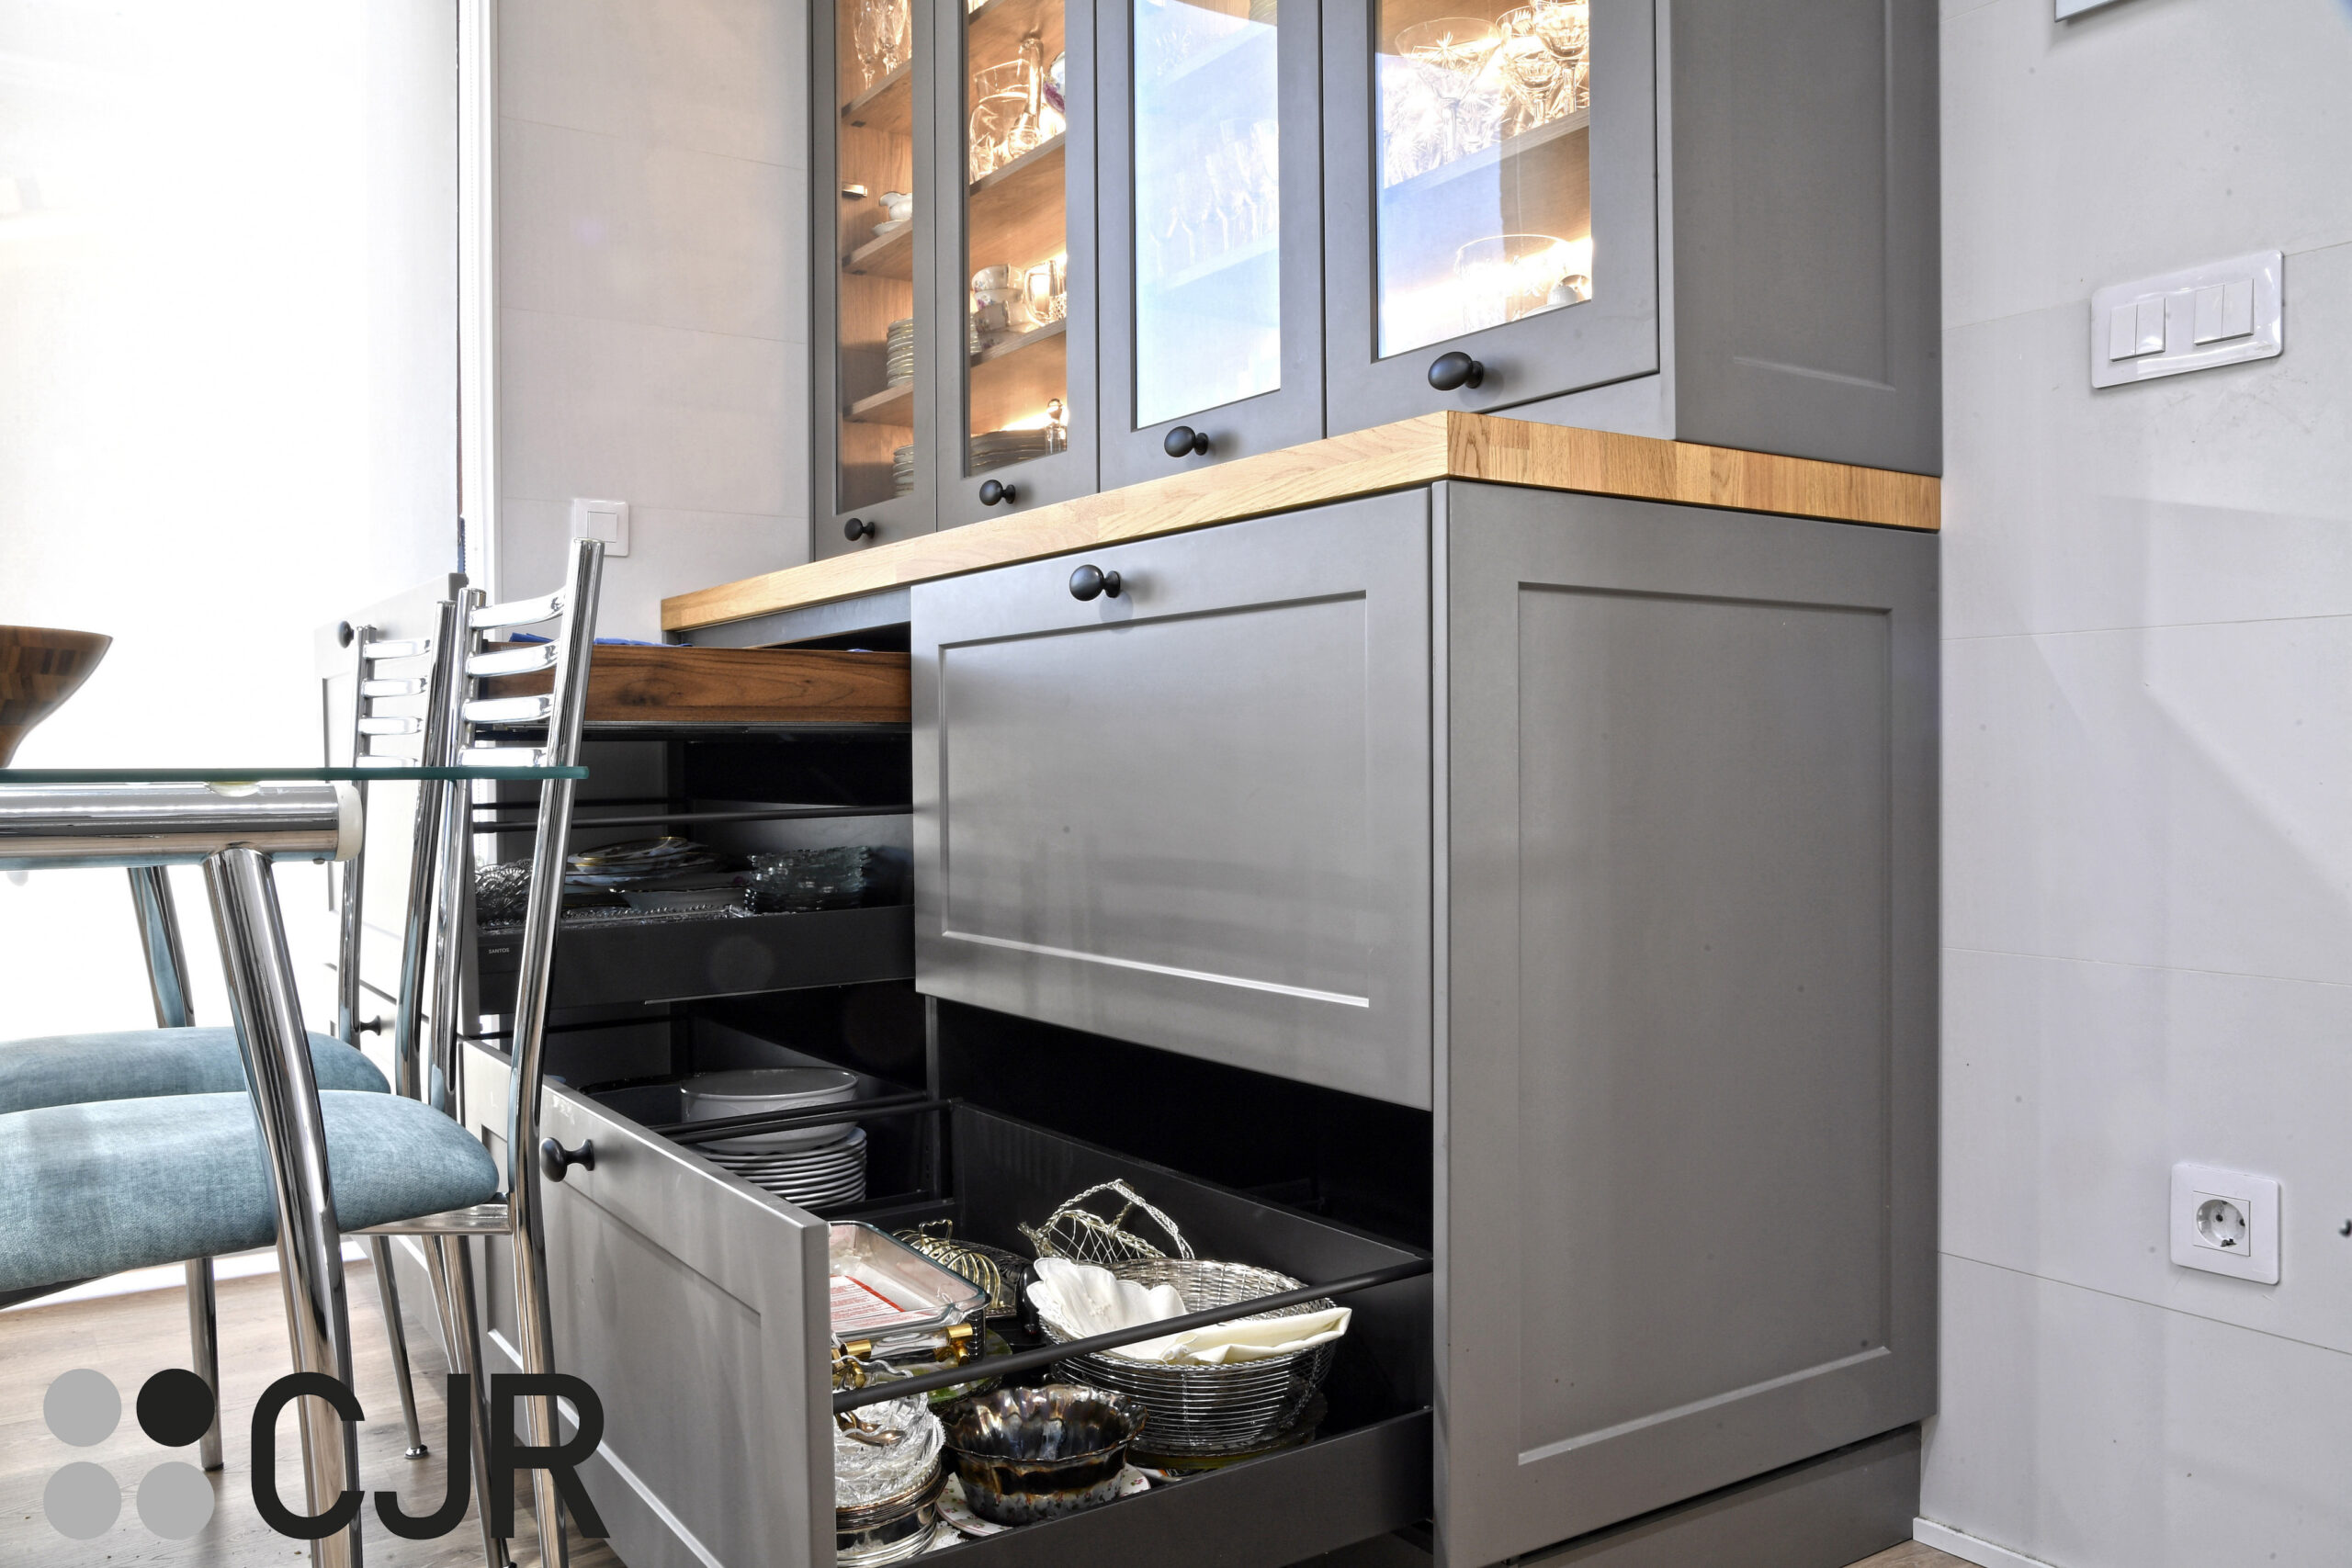 desayunador de cocina gris y madera moderna con vitrinas iluminadas cocinas cjr